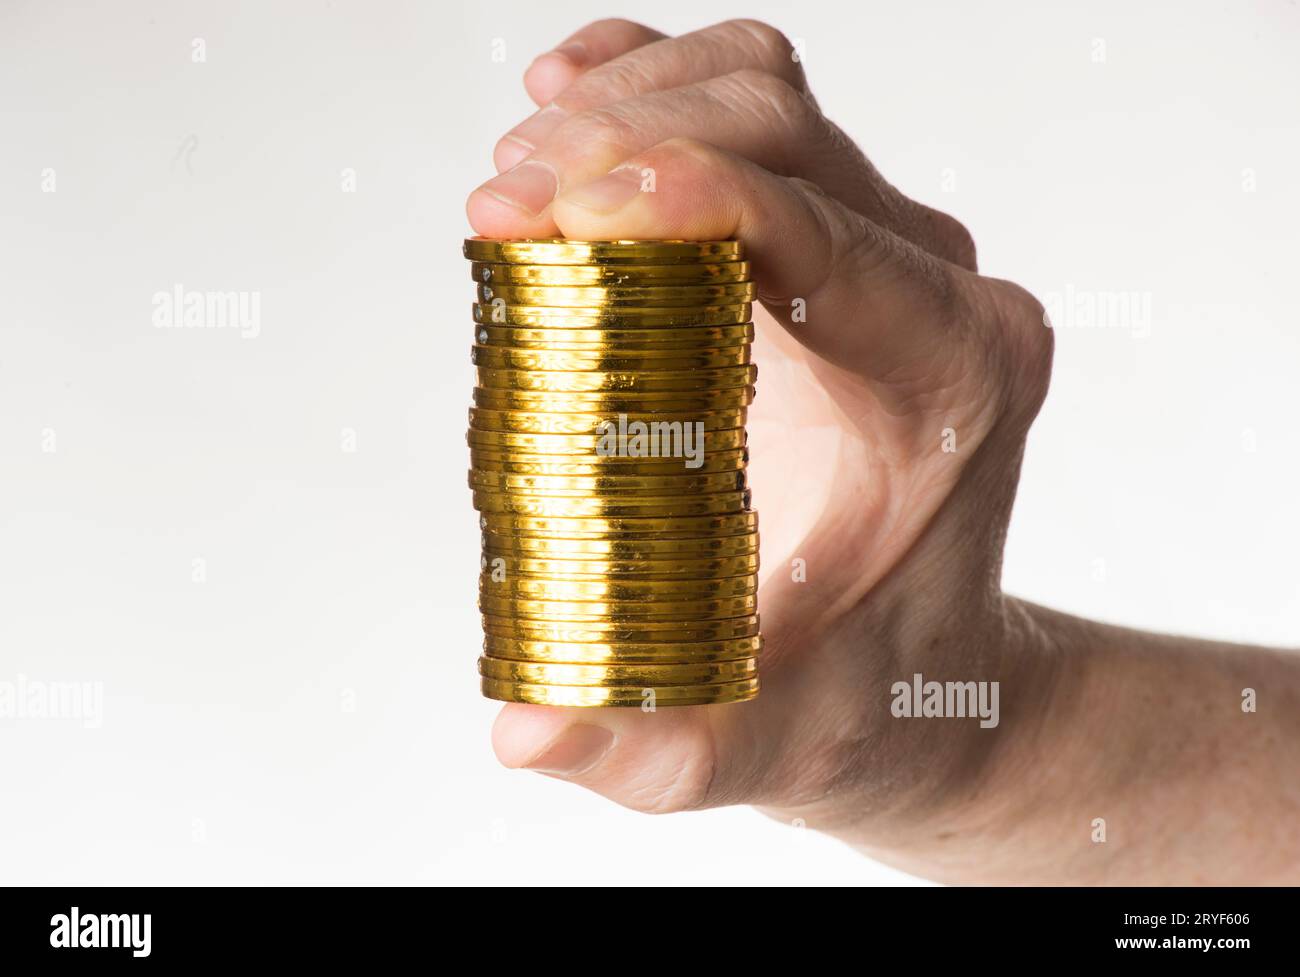 Monete d'oro come mezzo di scambio e pagamento Foto Stock